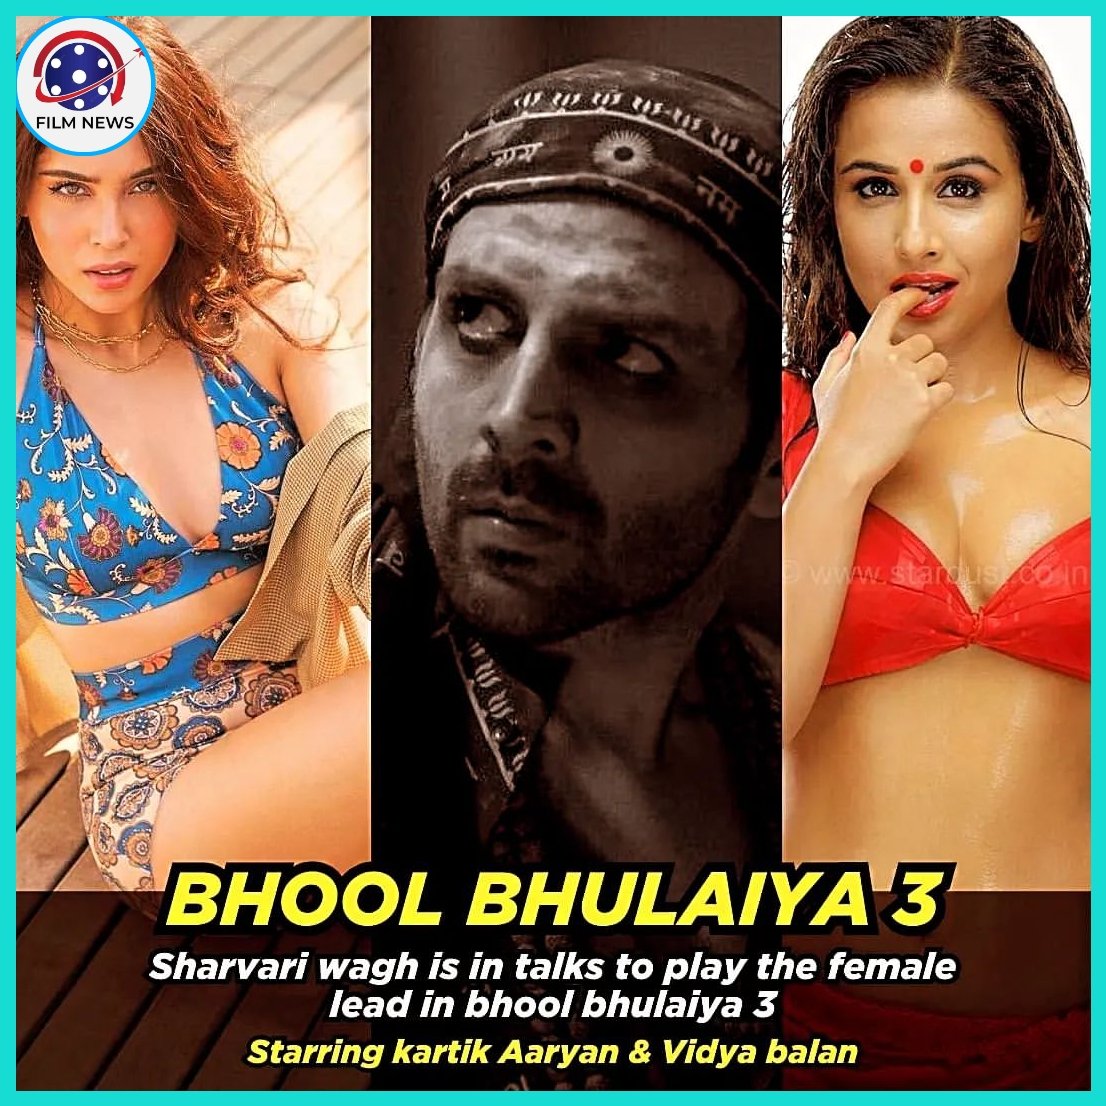 Bhool bhulaiya 3 update✅

#kartikaaryan #sharvariwagh #vidyabalan
#BhoolBhulaiyaa3 #bhoolbhulaiyaa2 #TSeries